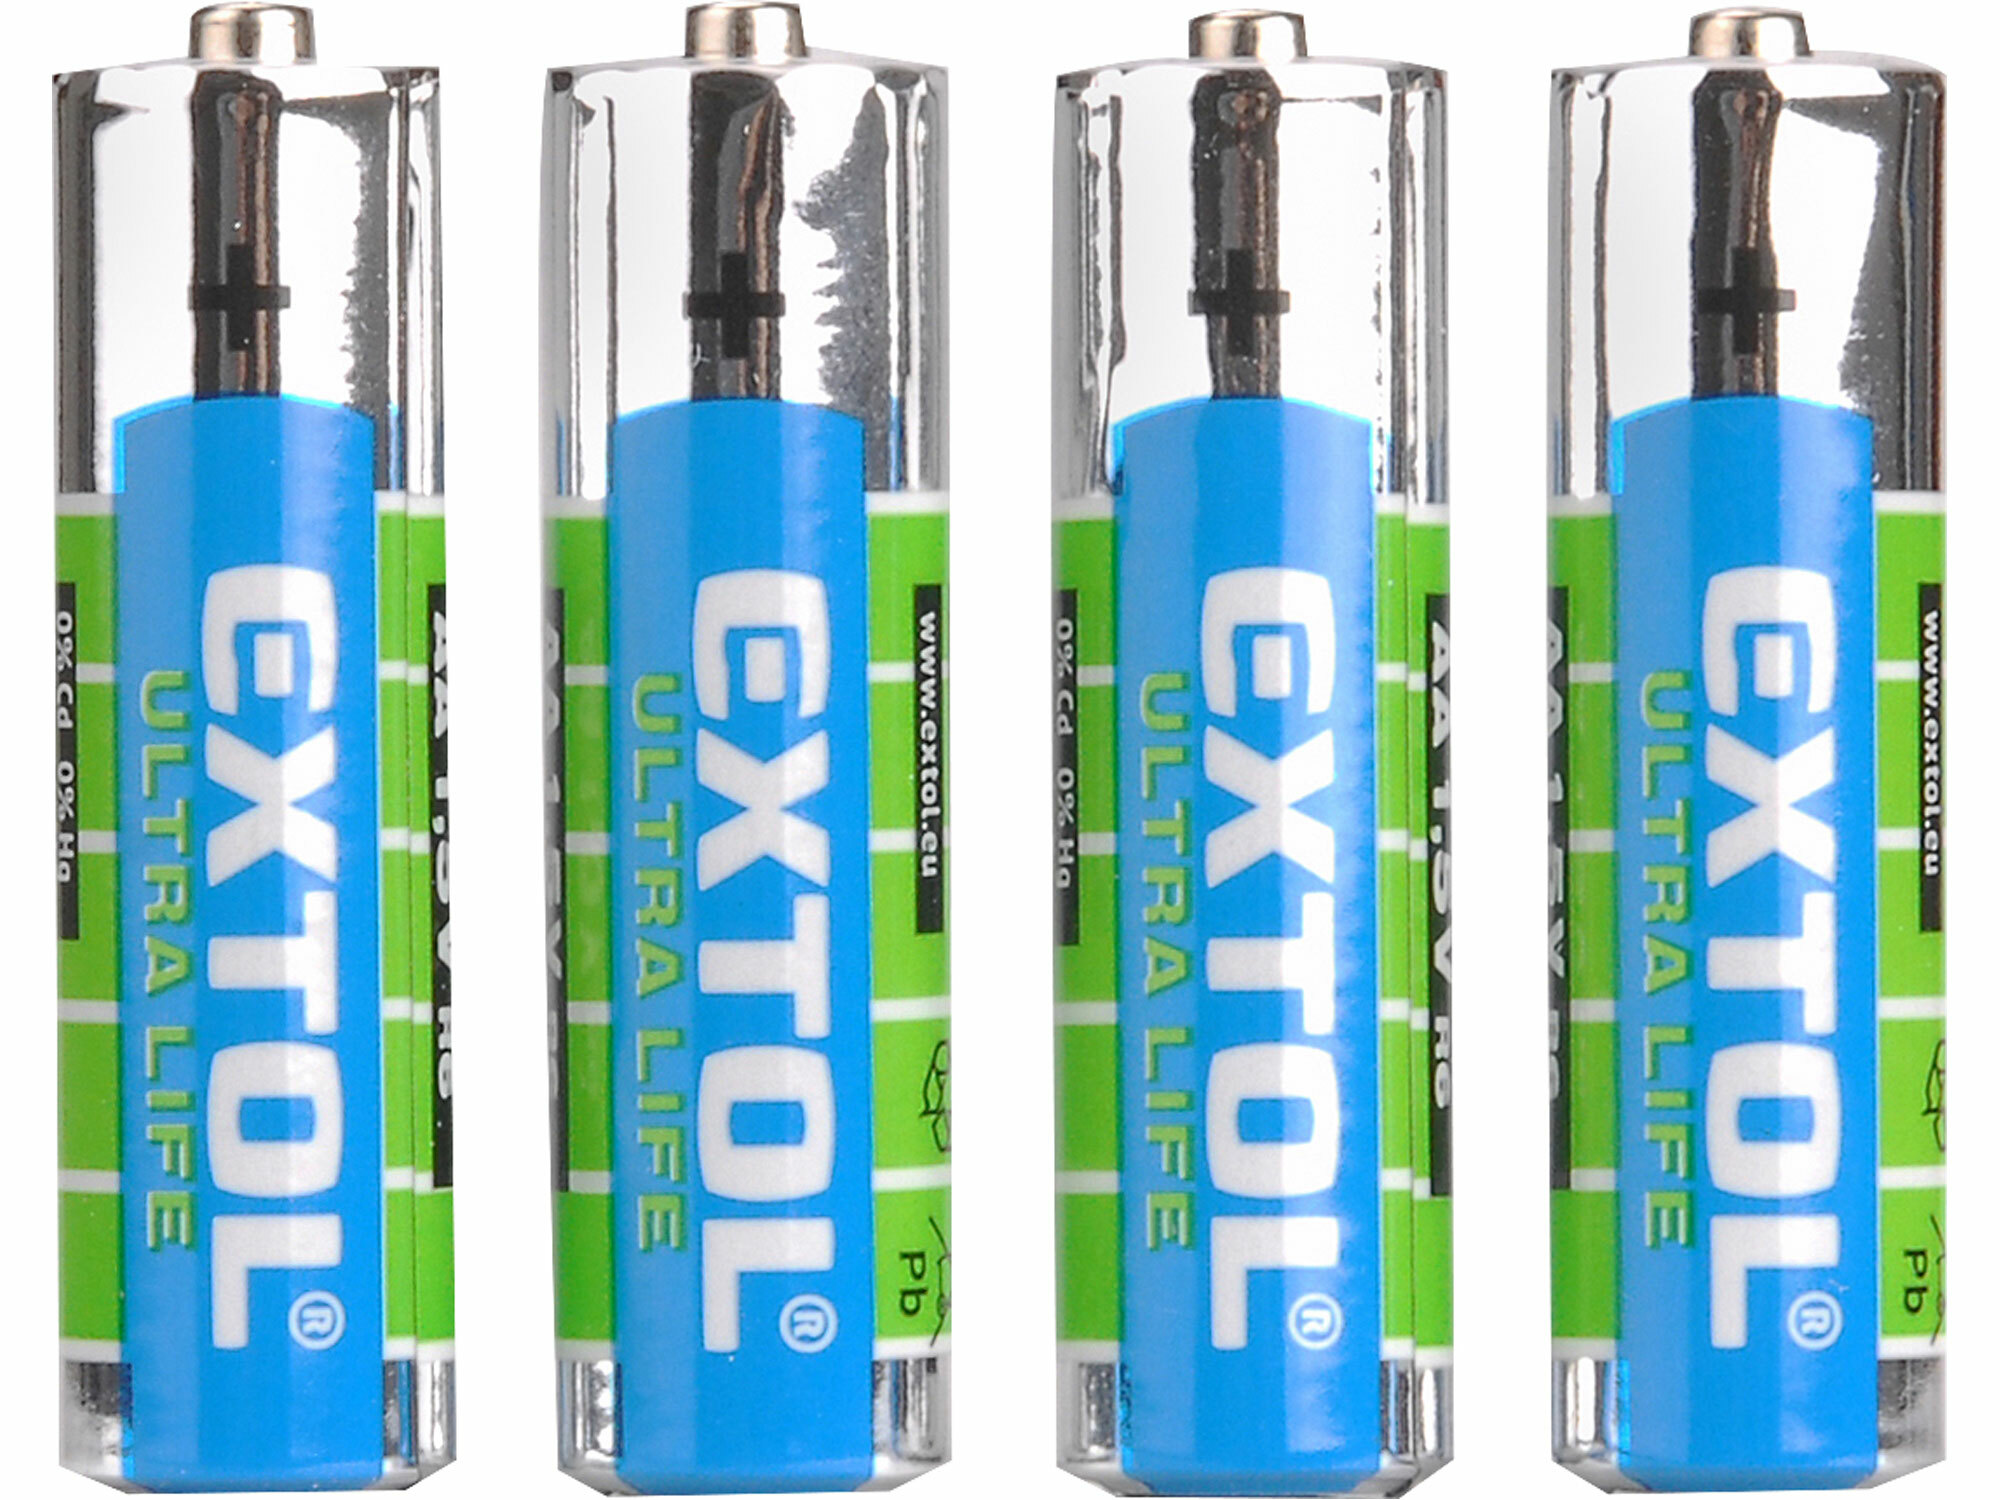 Batéria zink-chloridová 4ks, 1,5V, typ AA, EXTOL ENERGY